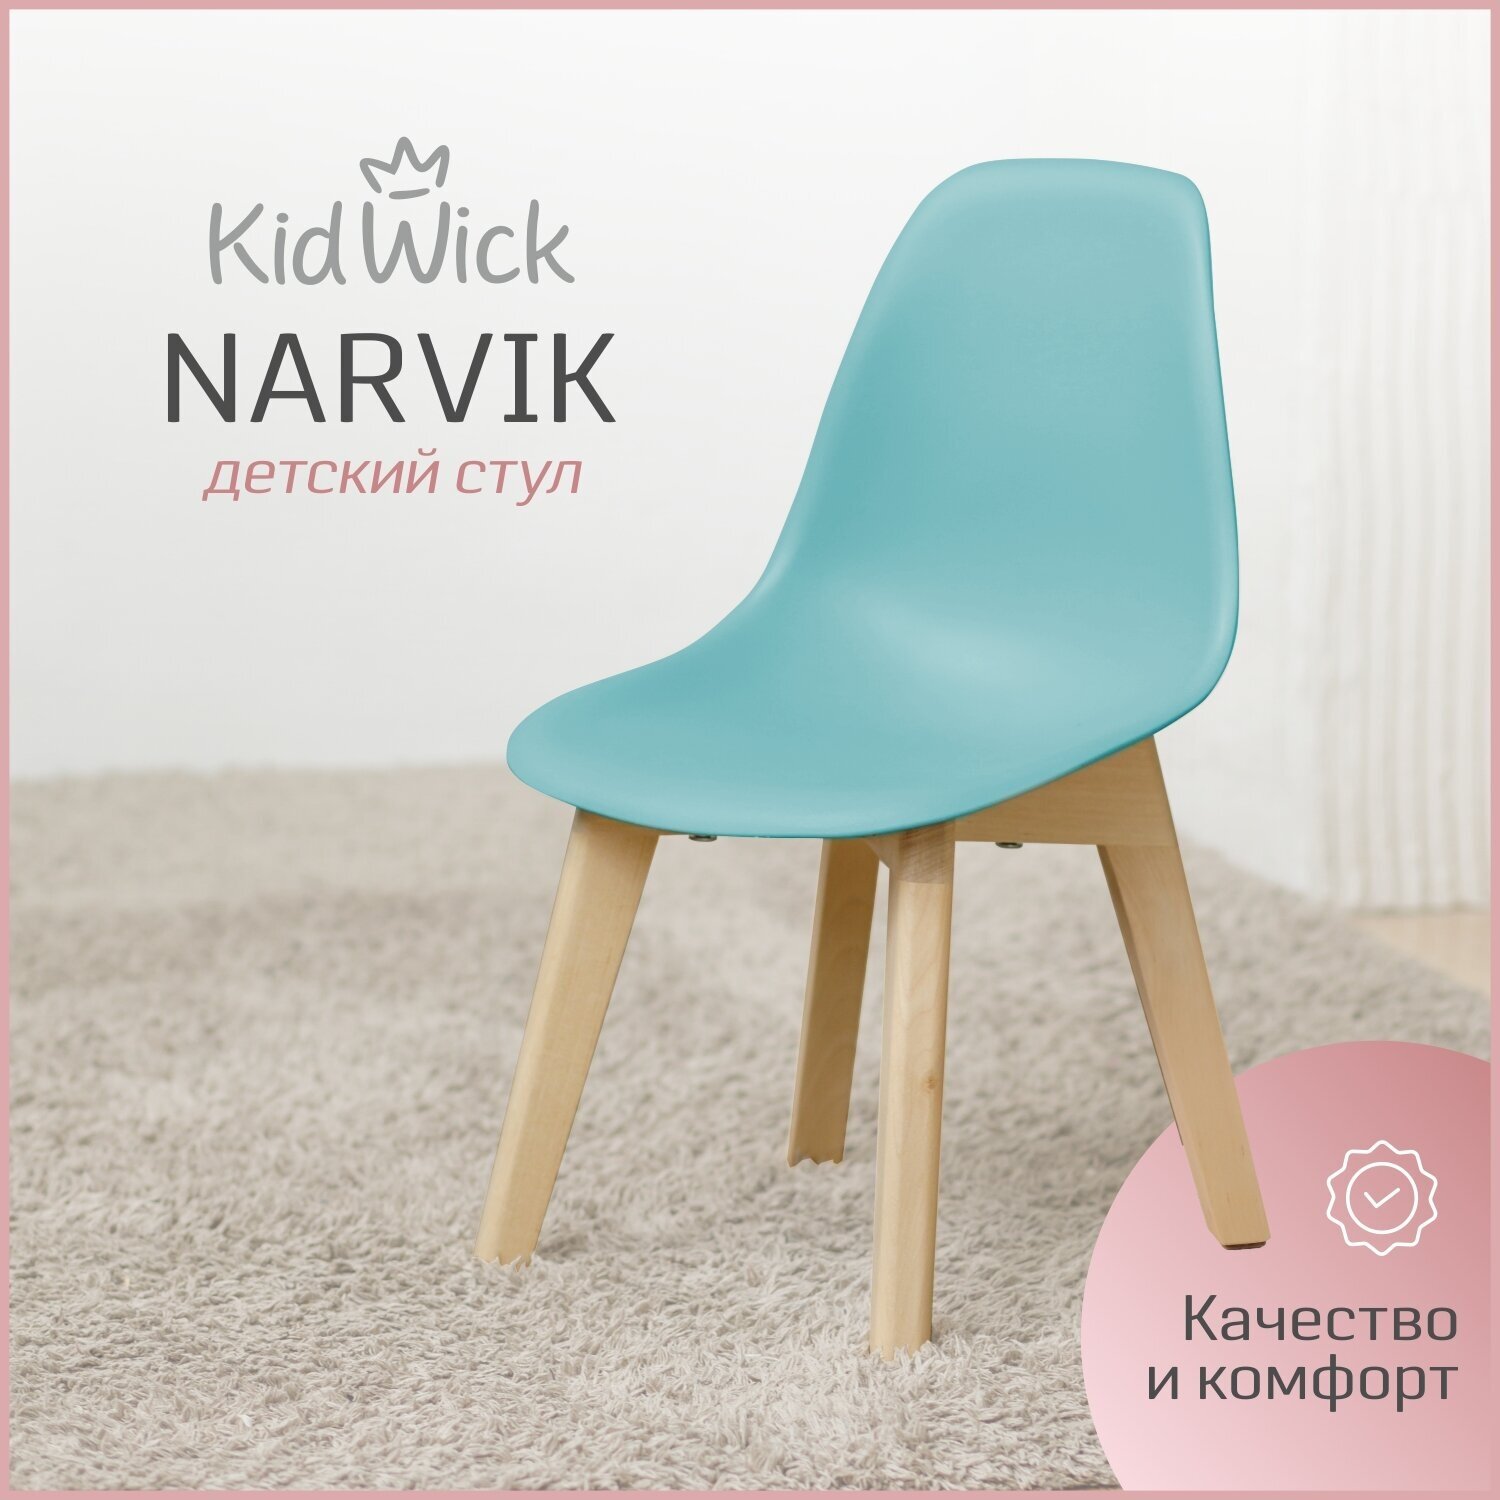 Стул детский Kidwick стульчик со спинкой «Narvik», бирюзовый - фотография № 1